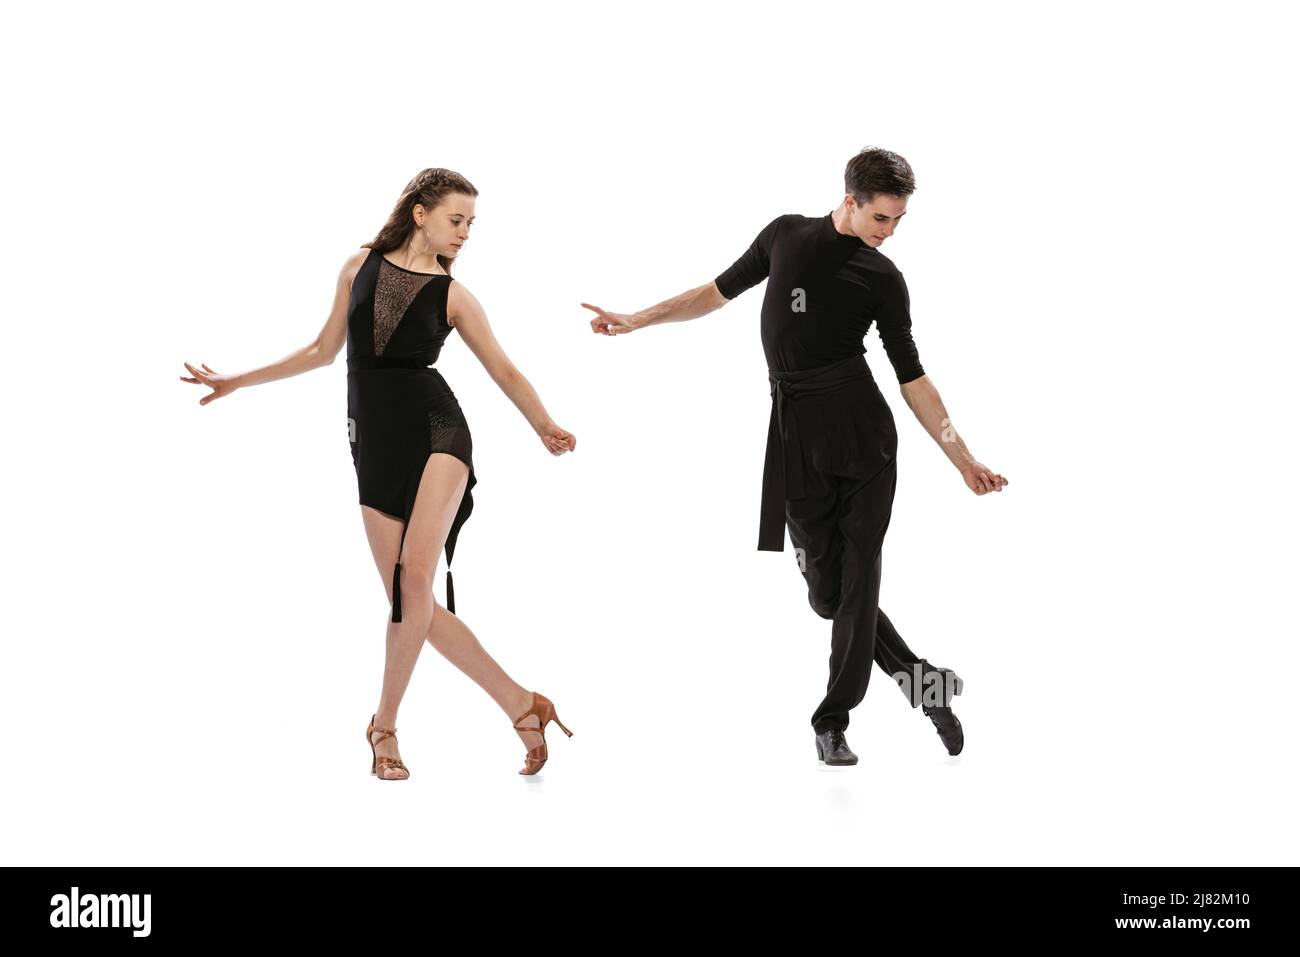 Quickstep. Dynamisches Porträt von jungen, gefühlvollen Tänzern in schwarzen Outfits, die auf weißem Hintergrund den Tanz im Ballsaal tanzen. Konzept von Kunst, Schönheit Stockfoto